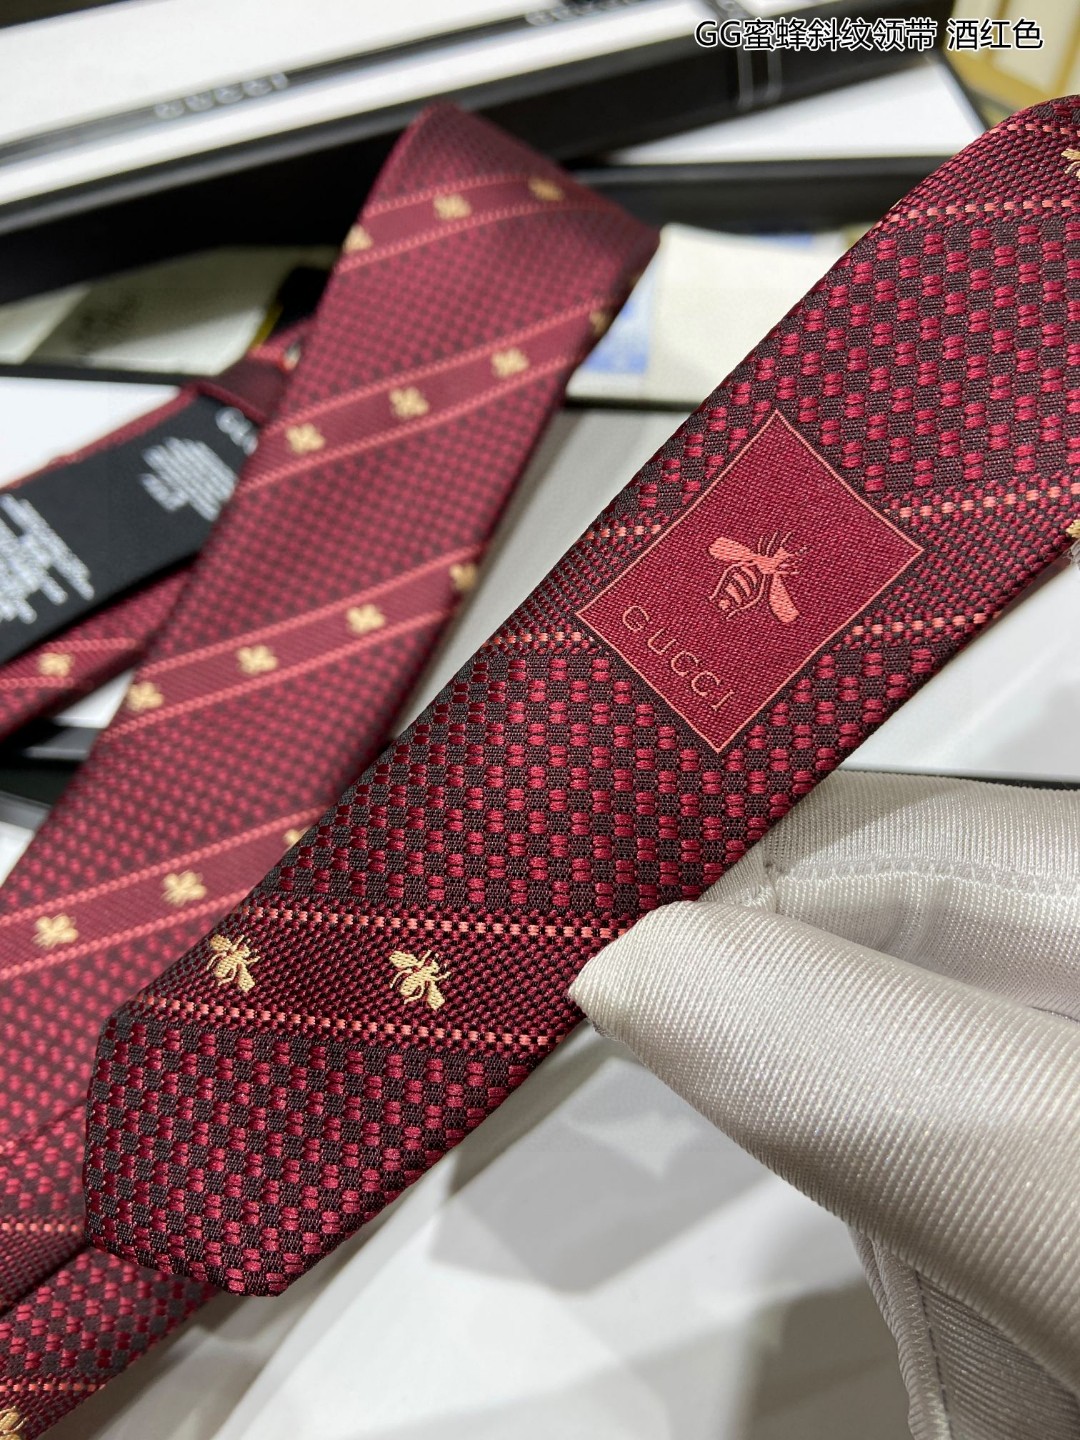 上新特价G家男士领带系列GG蜜蜂斜纹领带稀有展现精湛手工与时尚优雅的理想选择这款领带将标志性的主题动物小